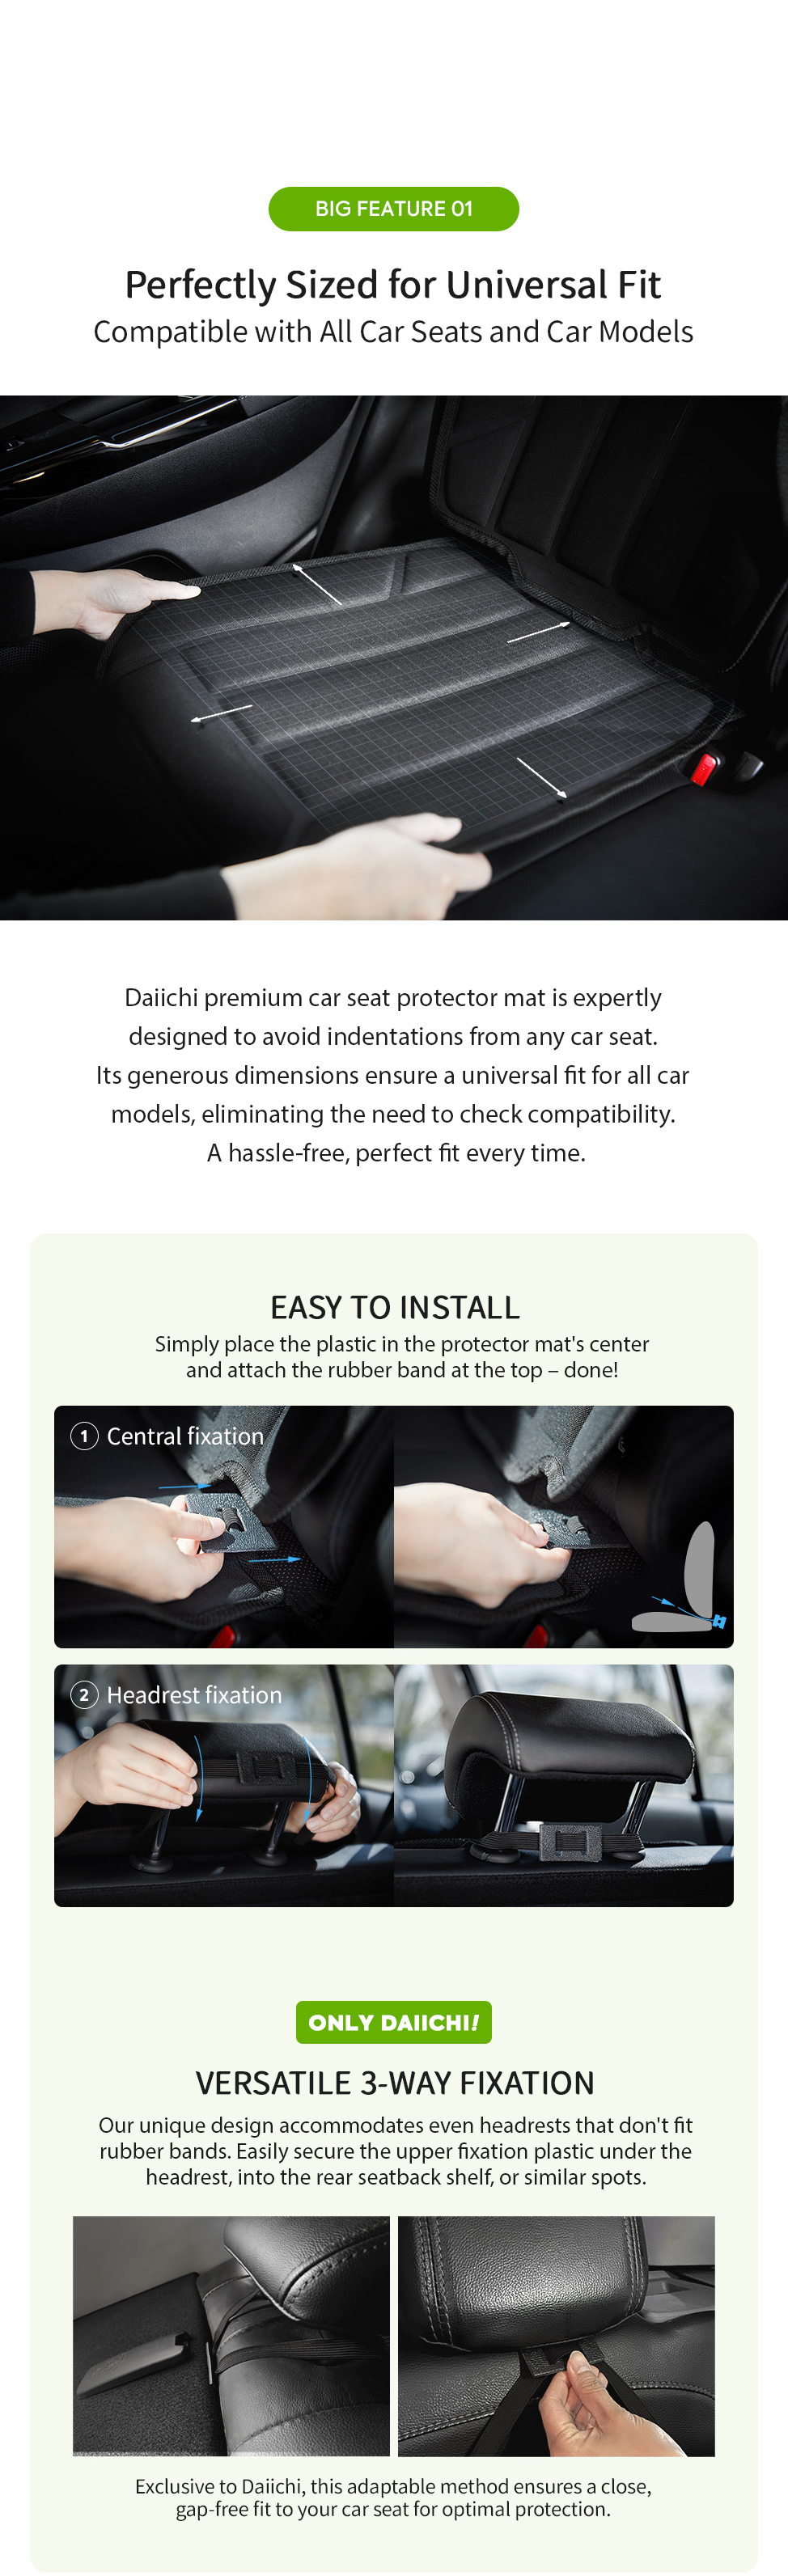 Daiichi Premium Car Seat Protector Mat Features